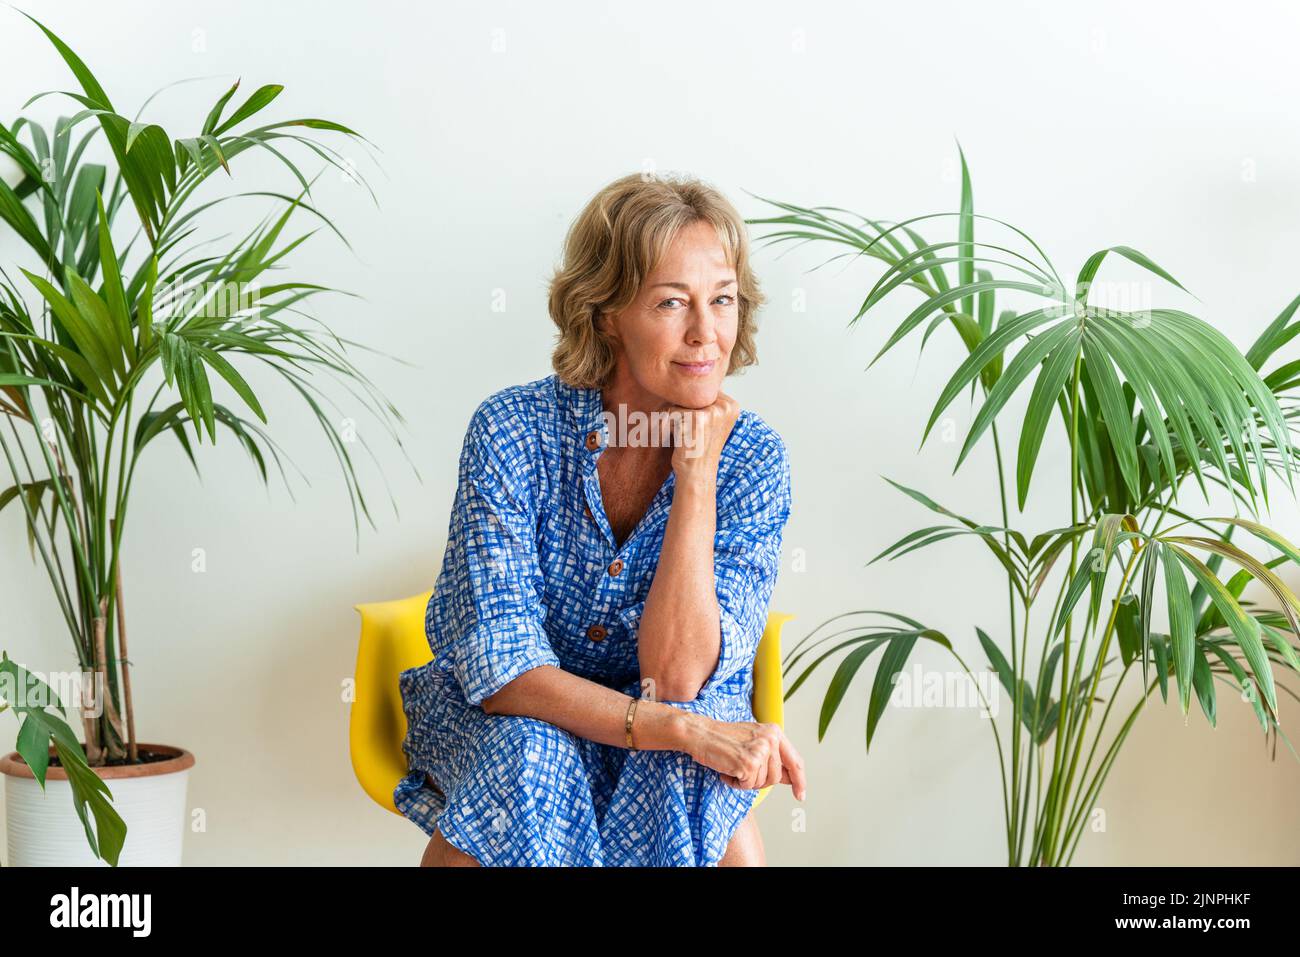 Schöne reife ältere Frau zu Hause, häusliches Leben und Freizeit Momente - 50-60 Jahre alt hübsche weibliche Erwachsene Porträt, Konzept über gesunde Lebensfreude Stockfoto